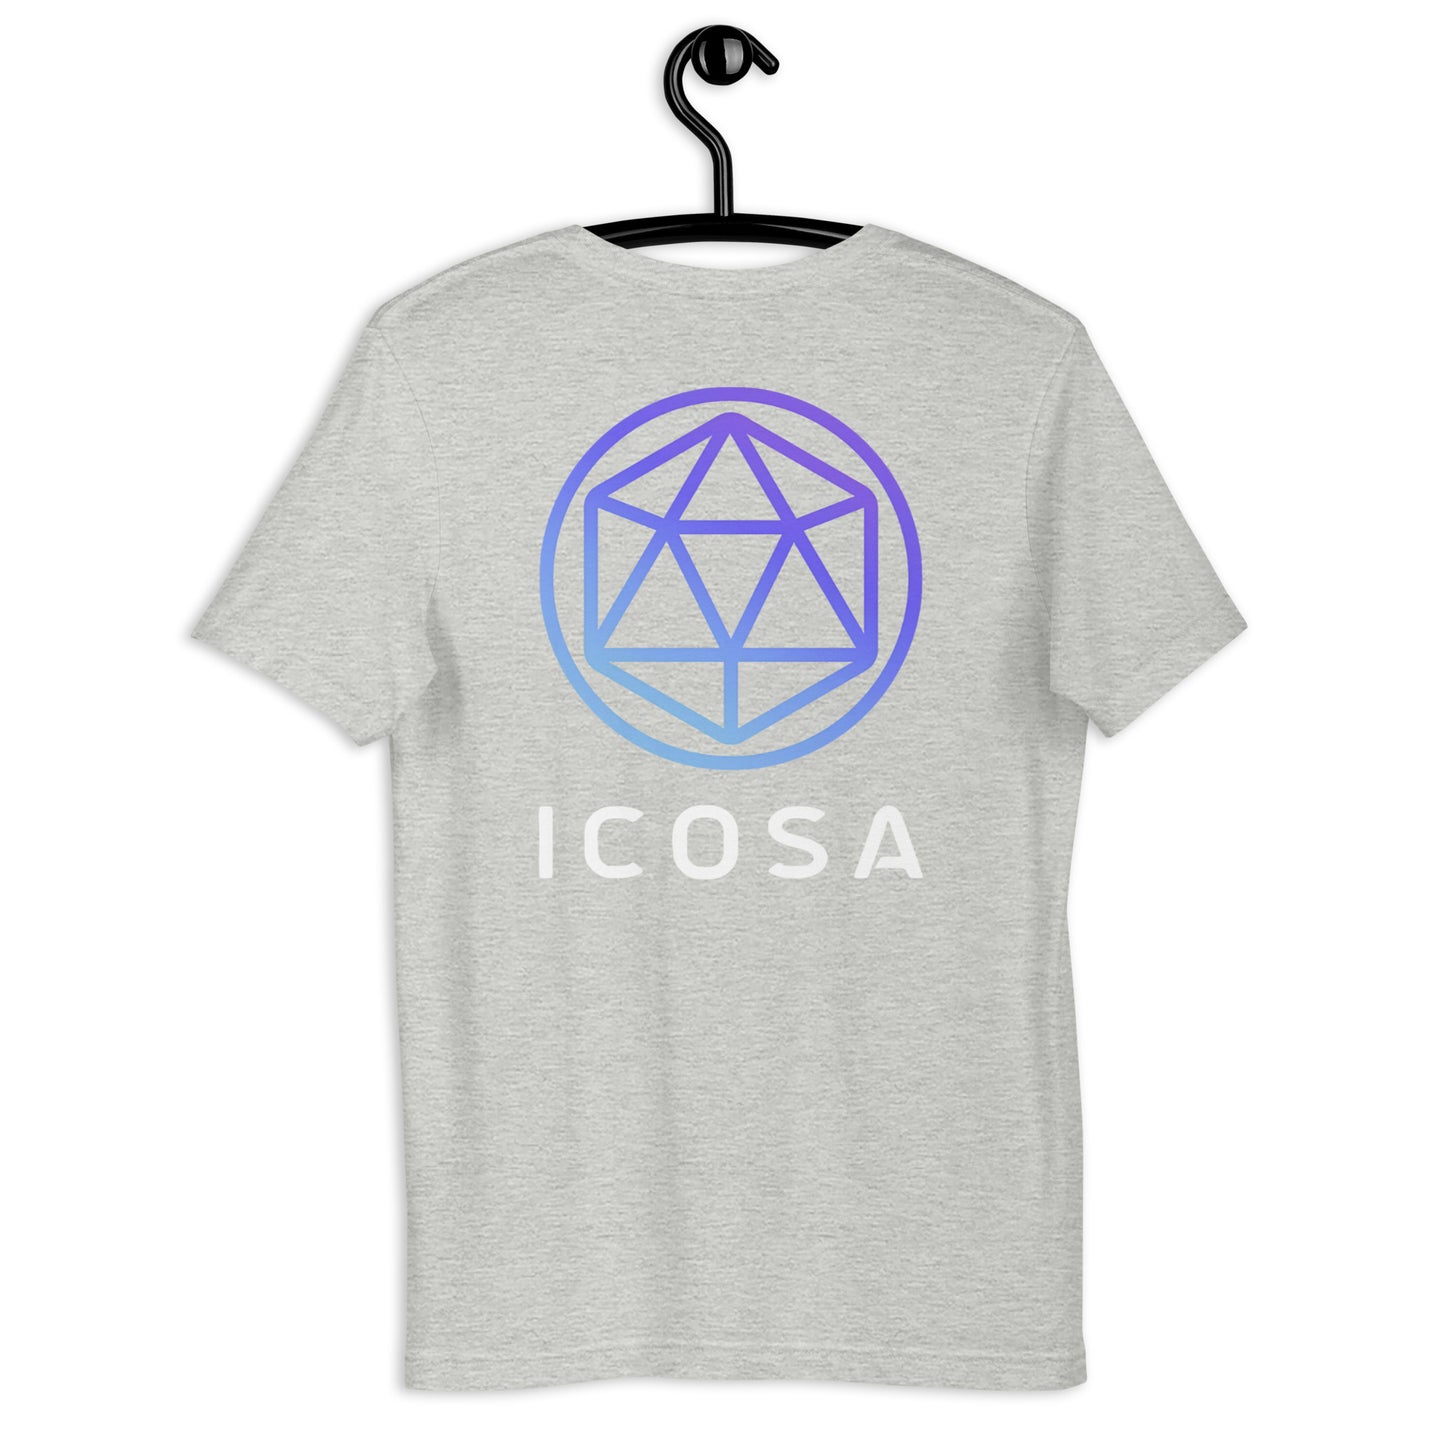 Icosa Unisex T-Shirt (Front & Back)